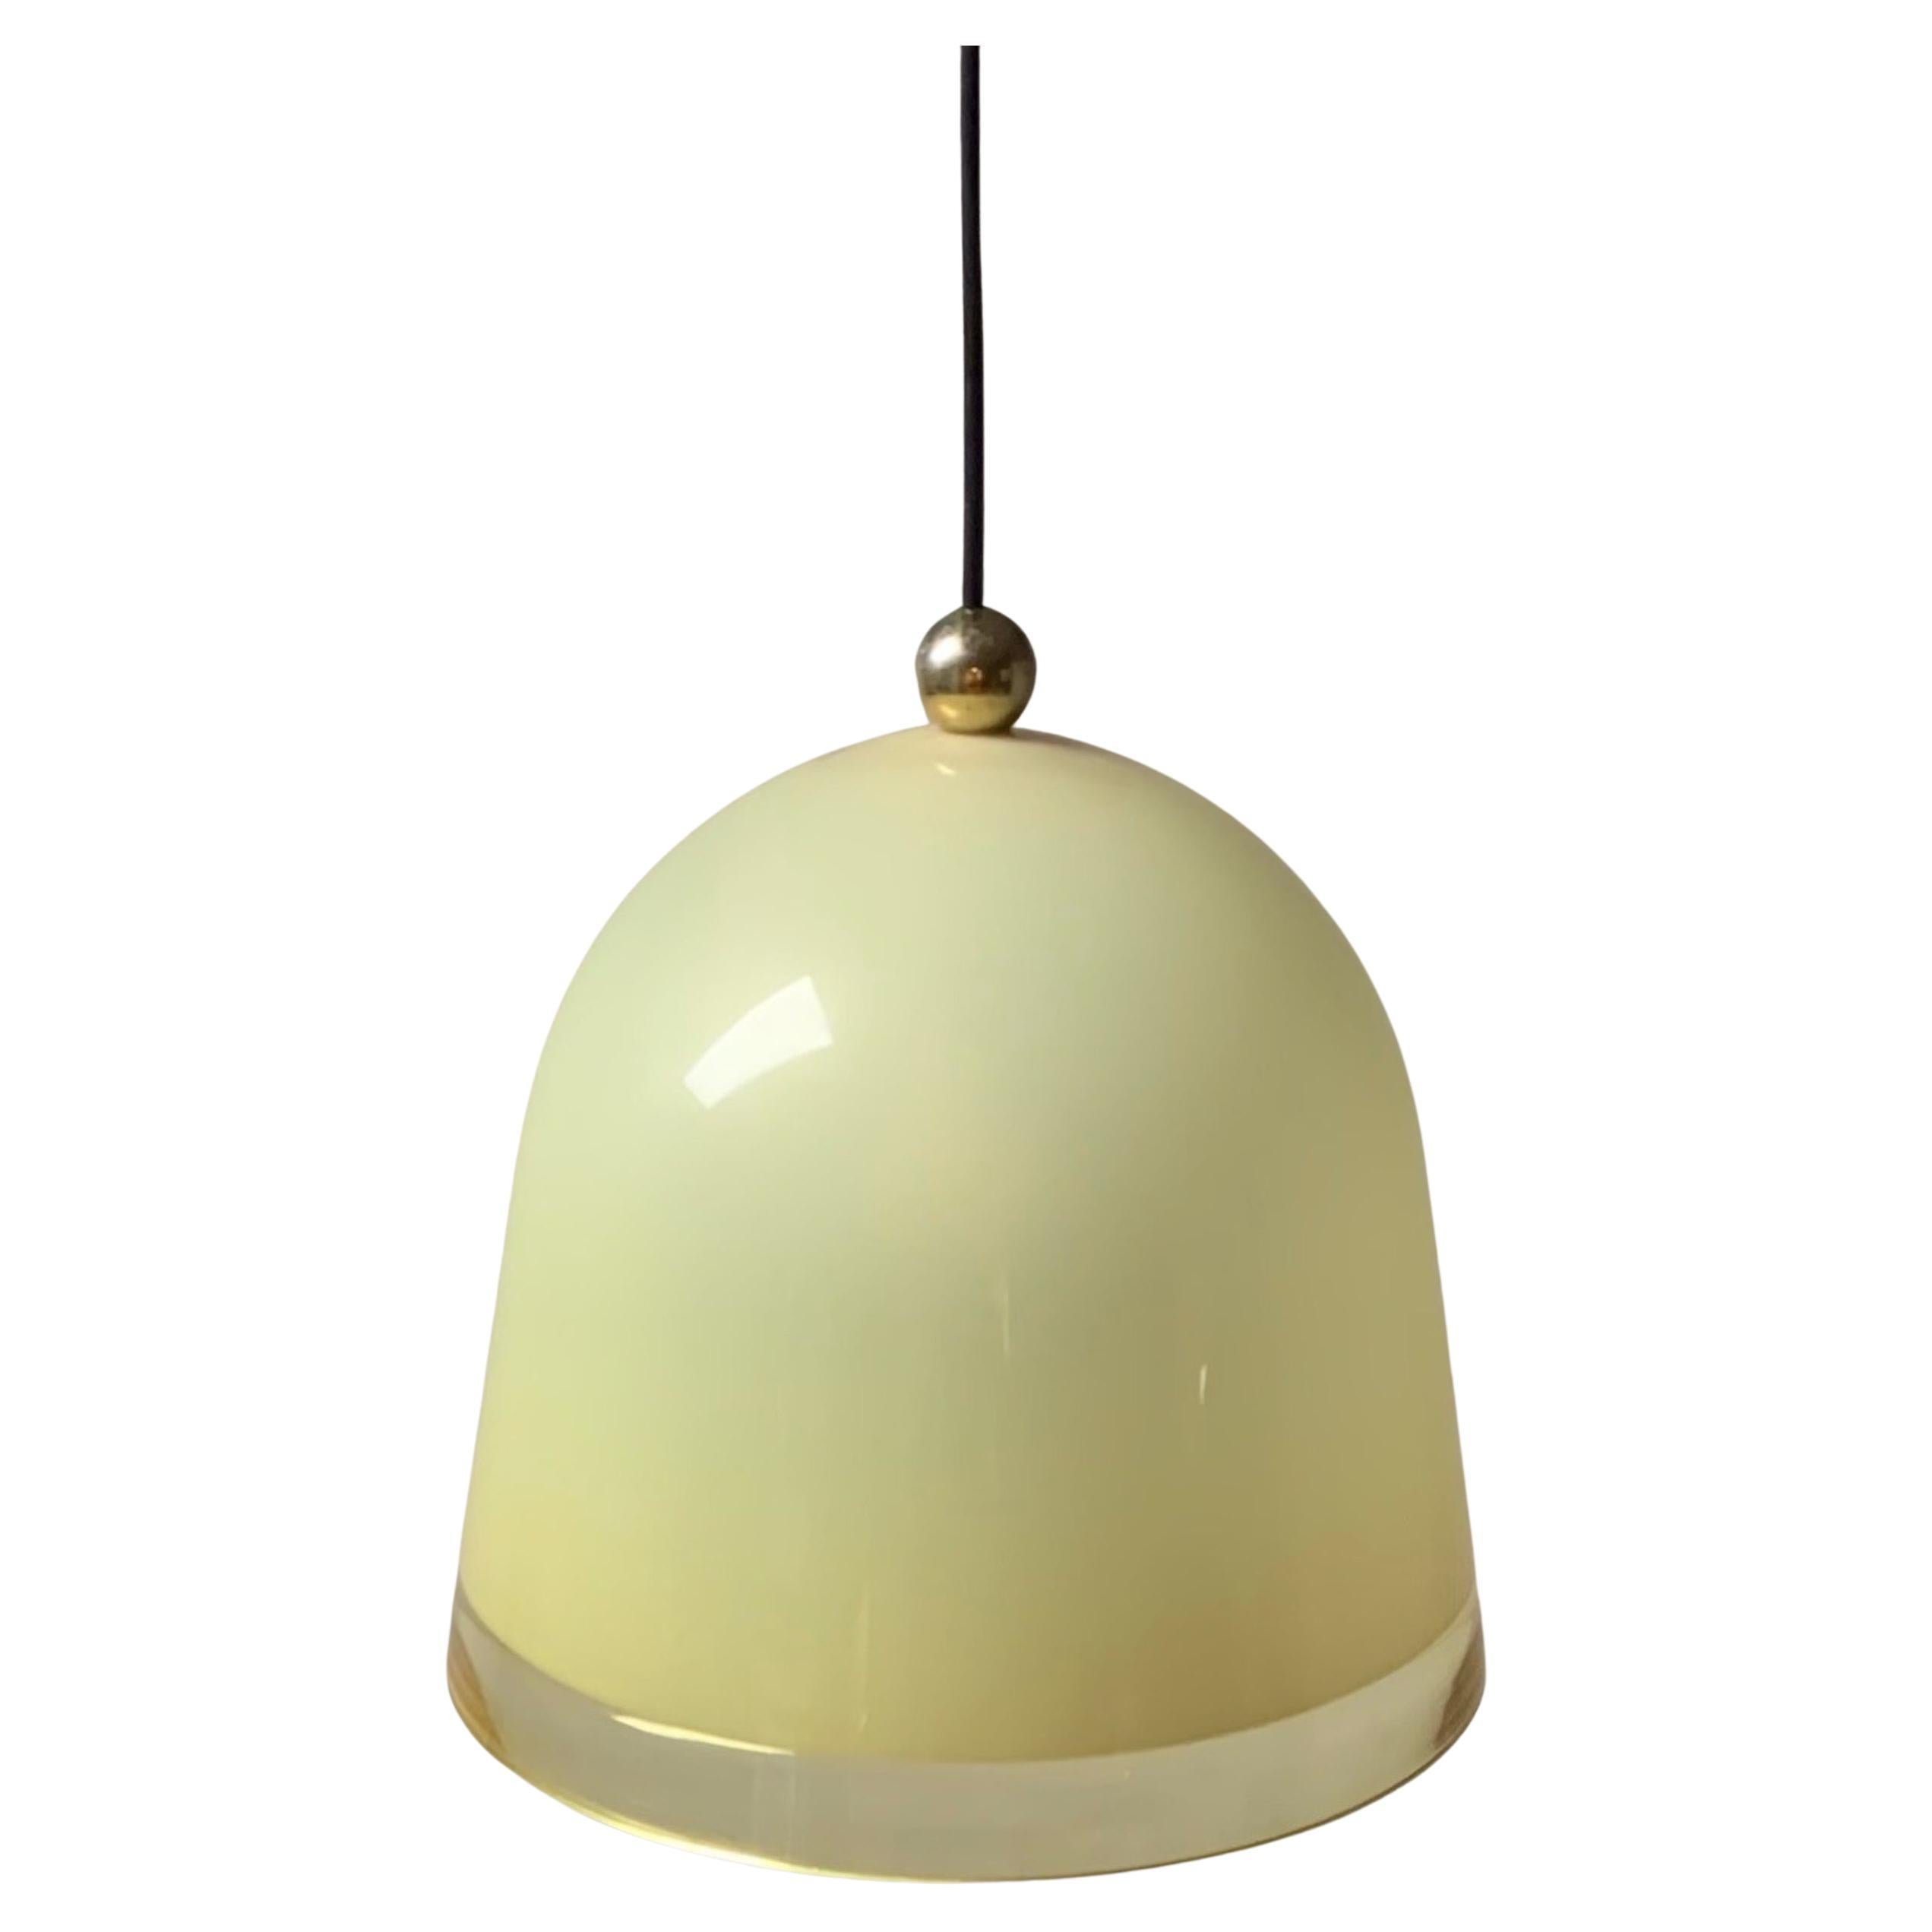 La lampe suspendue Guzzini Kuala a été conçue par Franco Bresciani en 1975 et produite par iGuzzini de la fin des années 70 au milieu des années 80. Cet abat-jour conique en forme de cloche est fabriqué en acrylique translucide ocre. L'abat-jour est